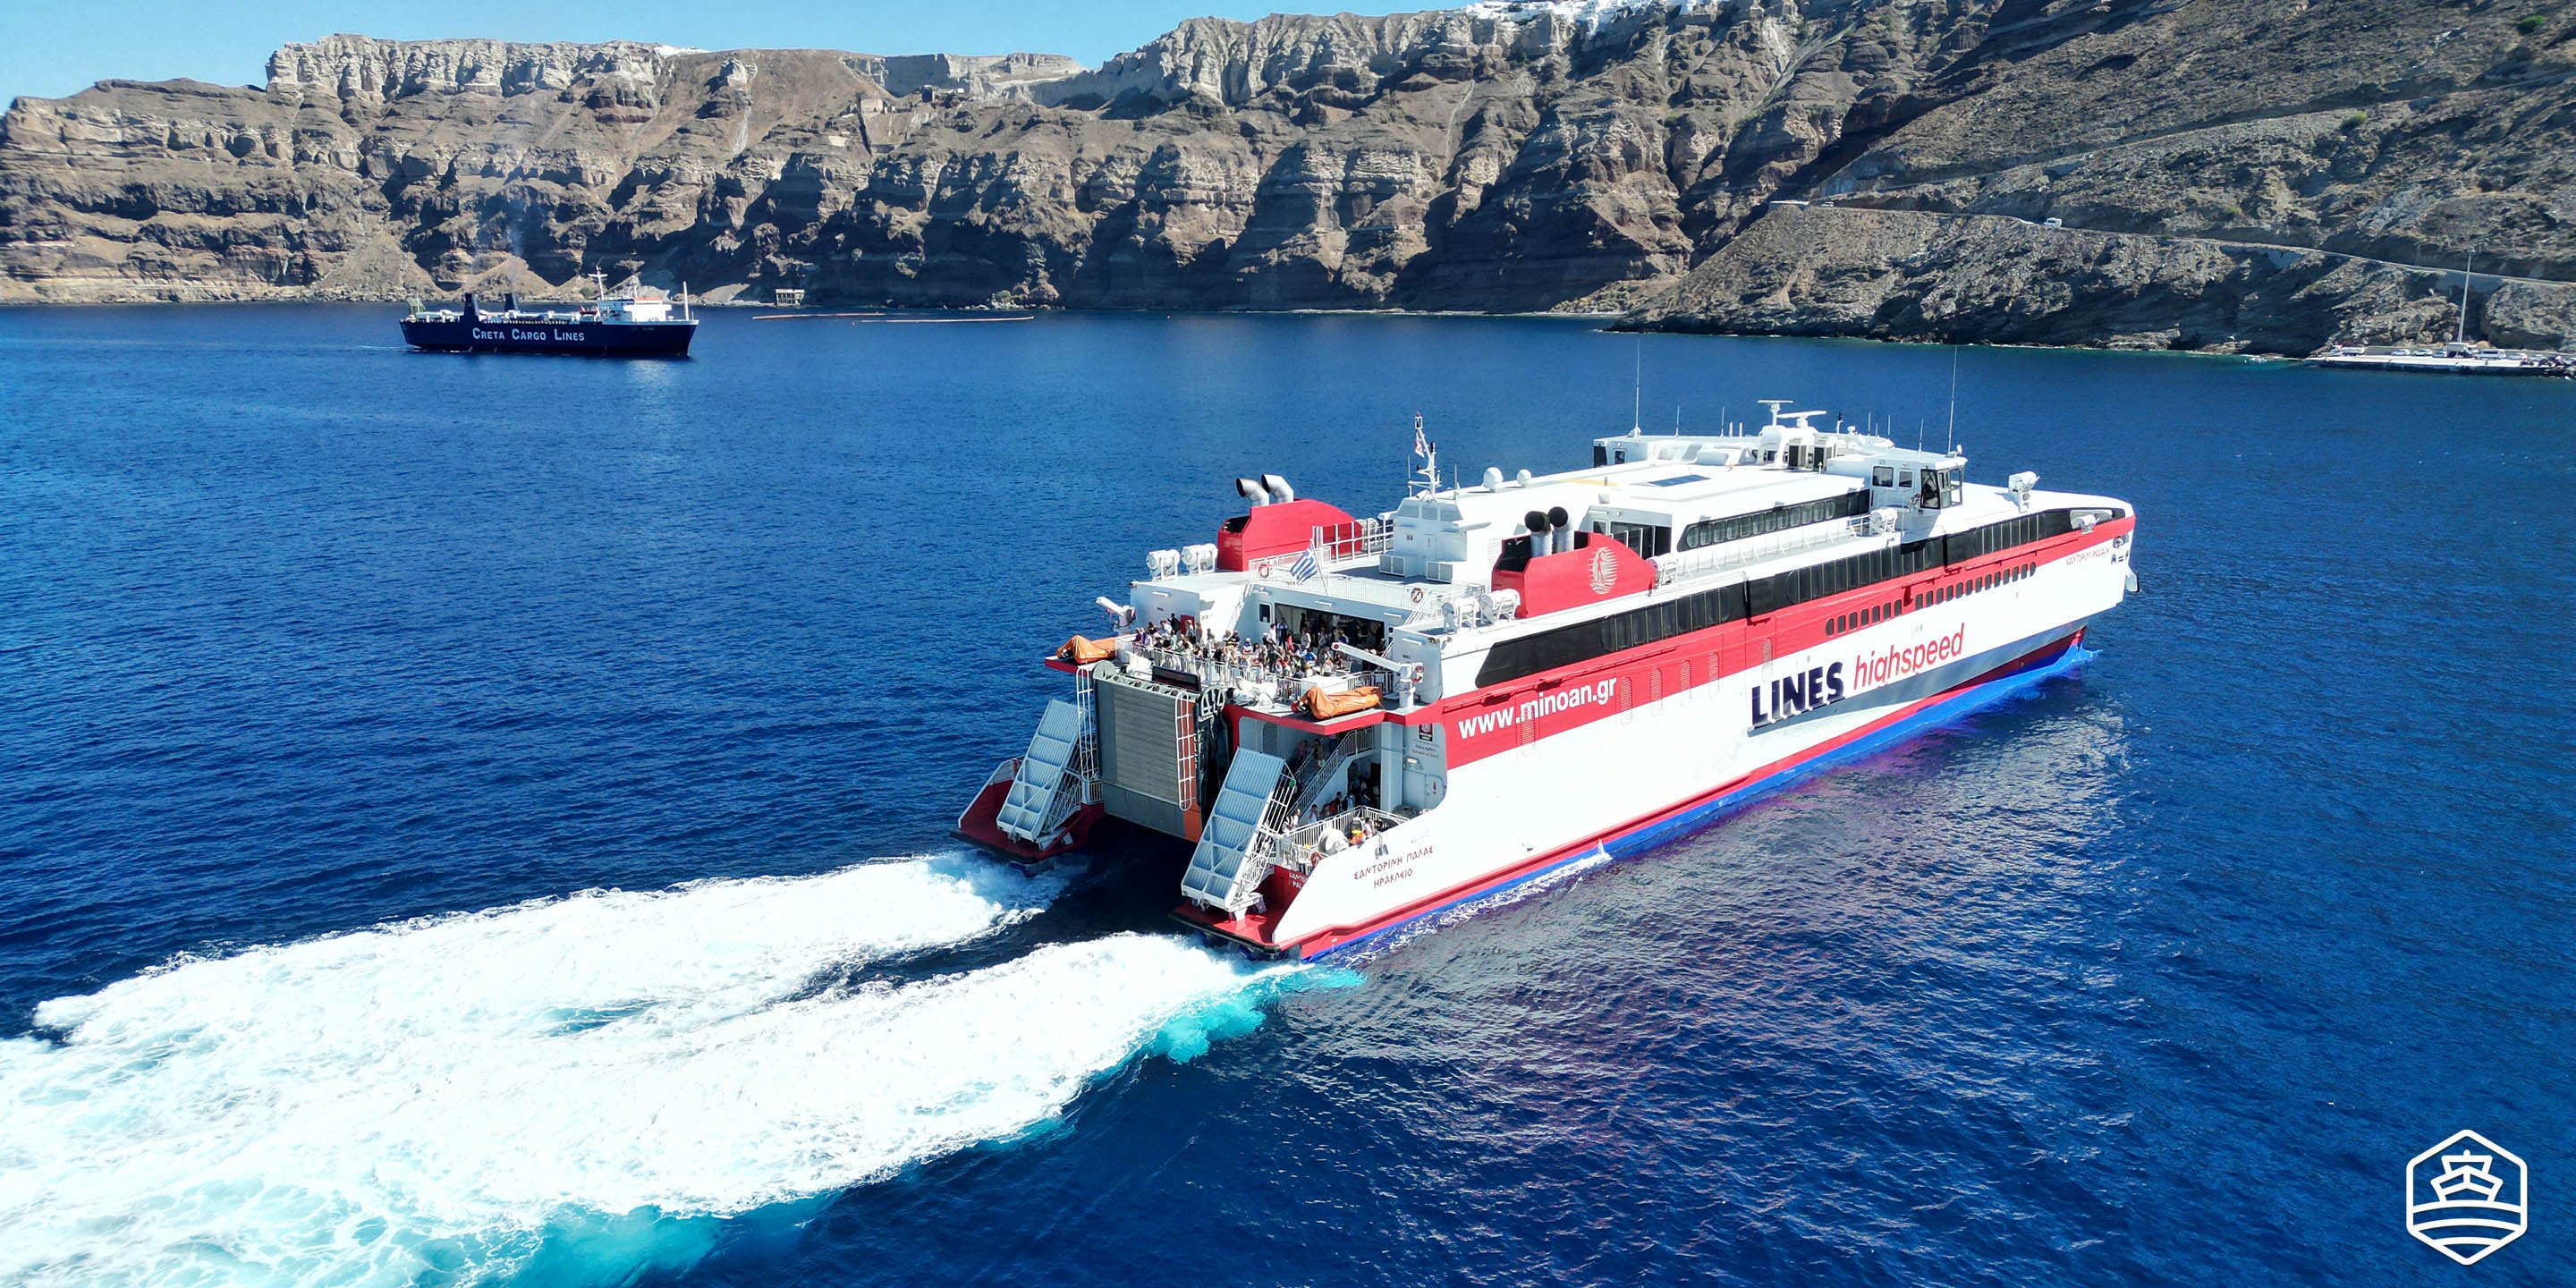 Il traghetto ad alta velocità Santorini Palace di Minoan Lines in arrivo al porto di Athinios da Heraklion Creta